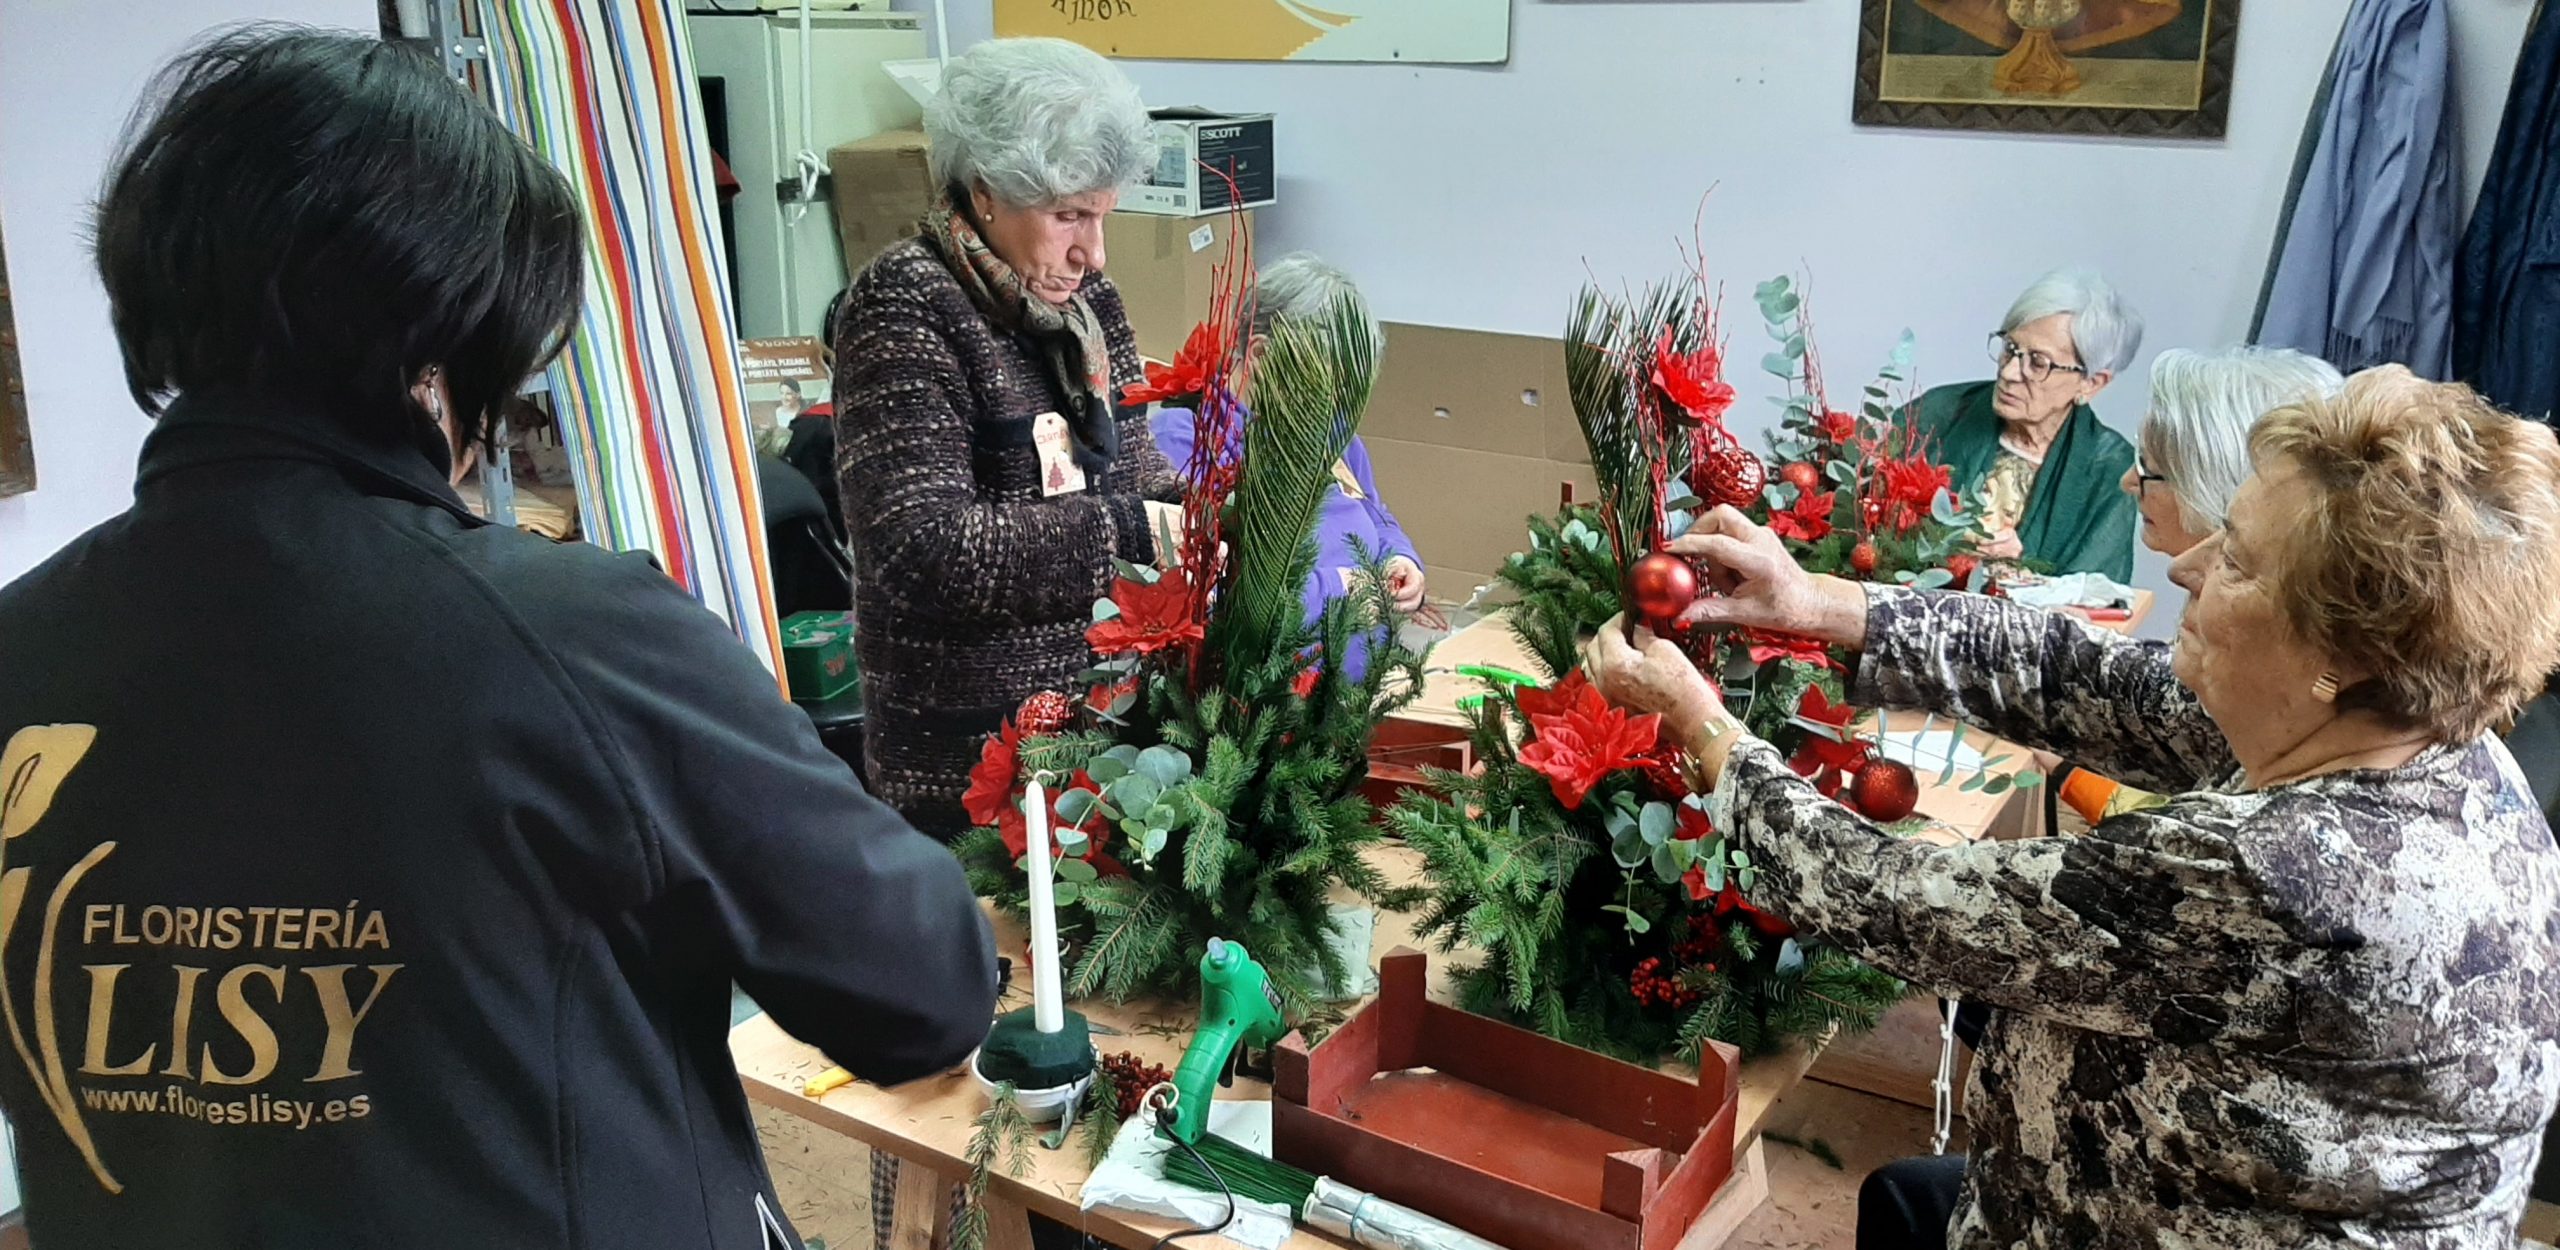 talleres manualidades asociaciones entretenimiento aprender flores amas de casa centros navidad